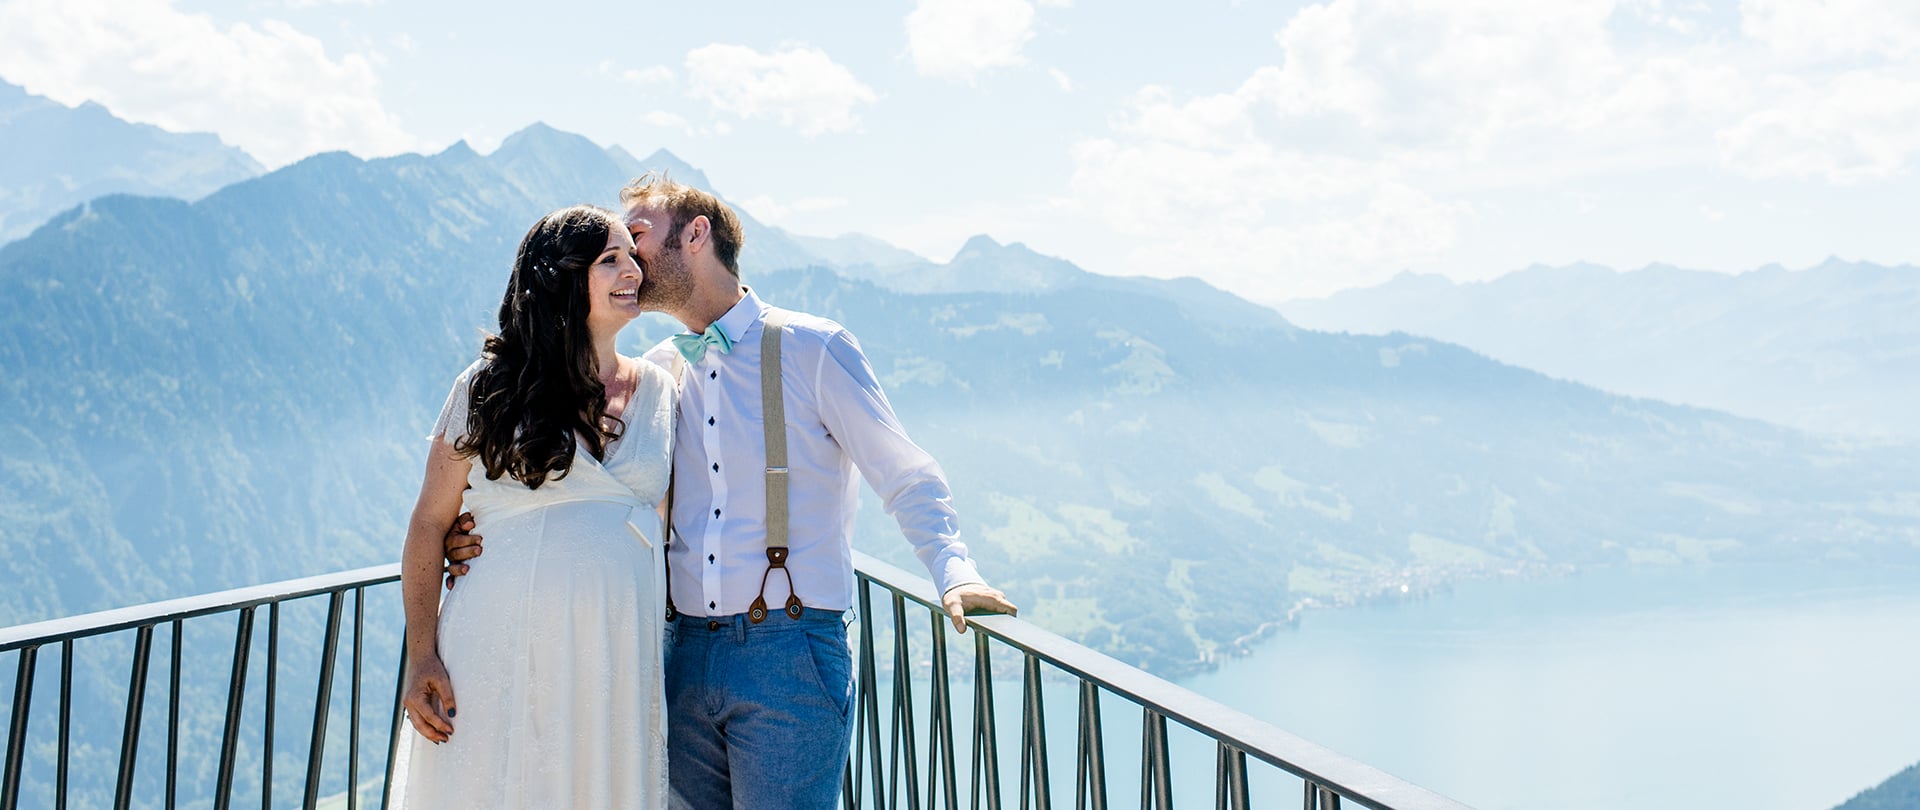 Véronique and Hannes Wedding Video Filmed atInterlaken,Switzerland